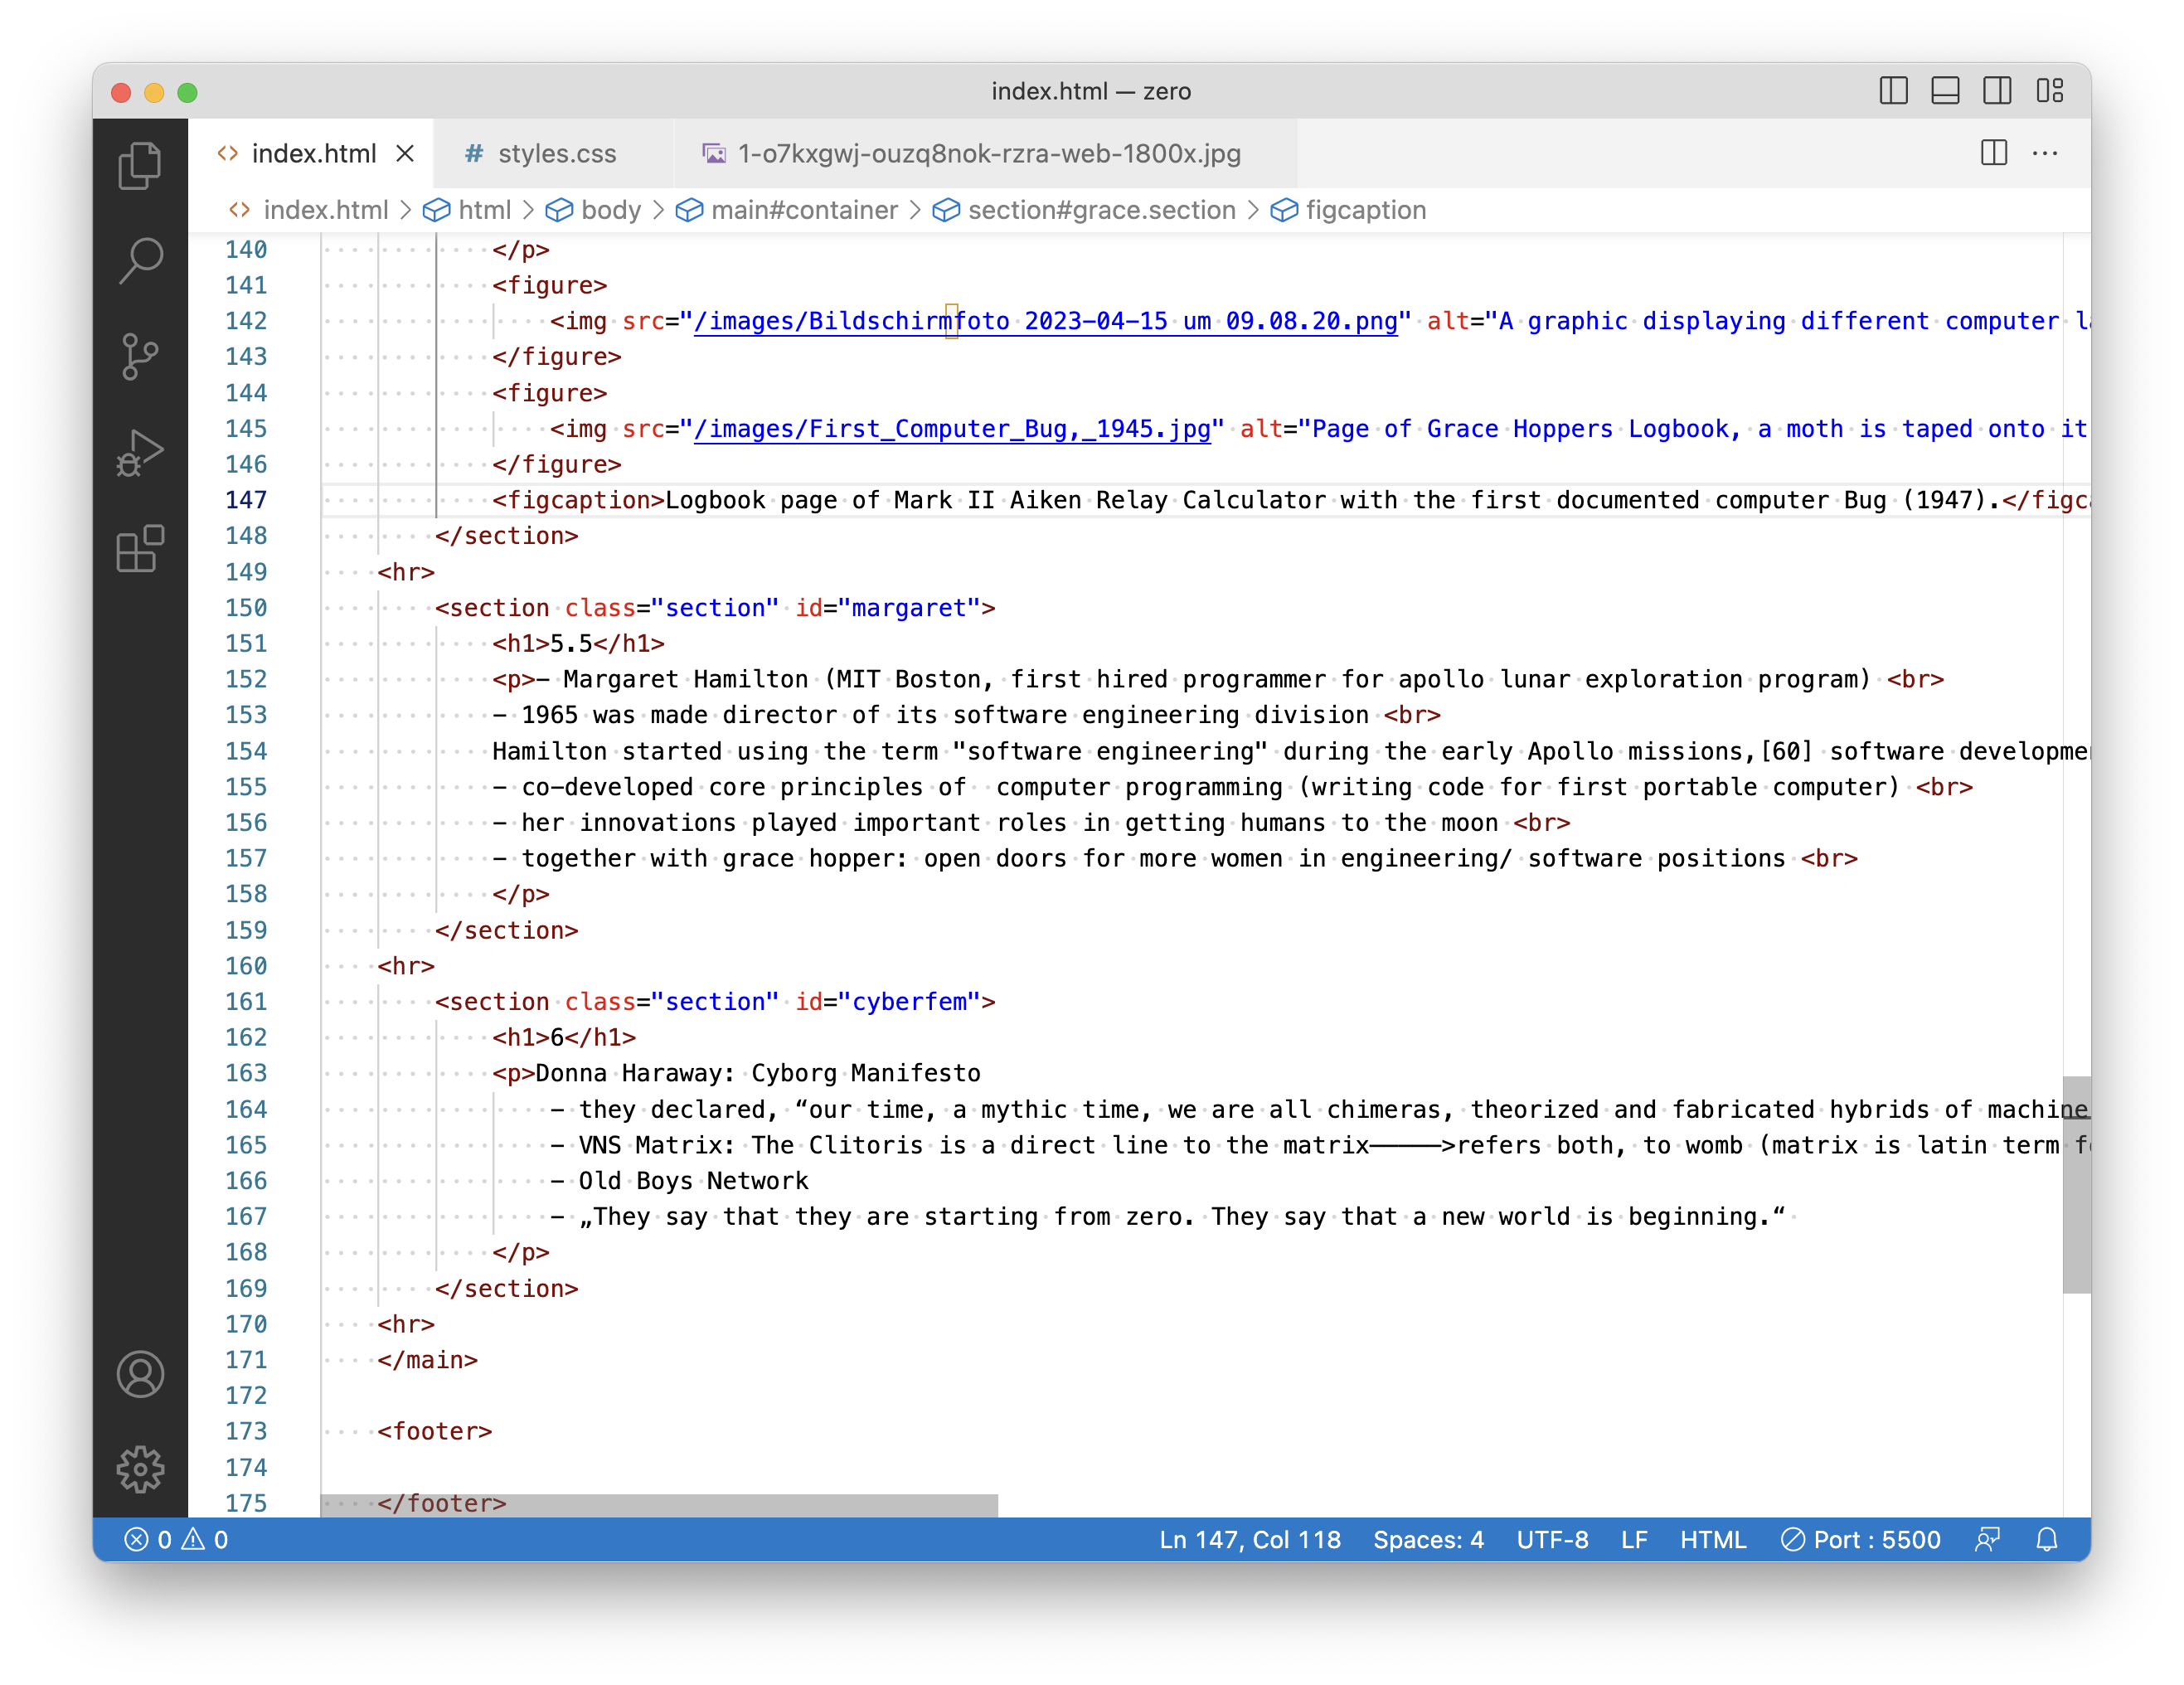 screenshot of an html code